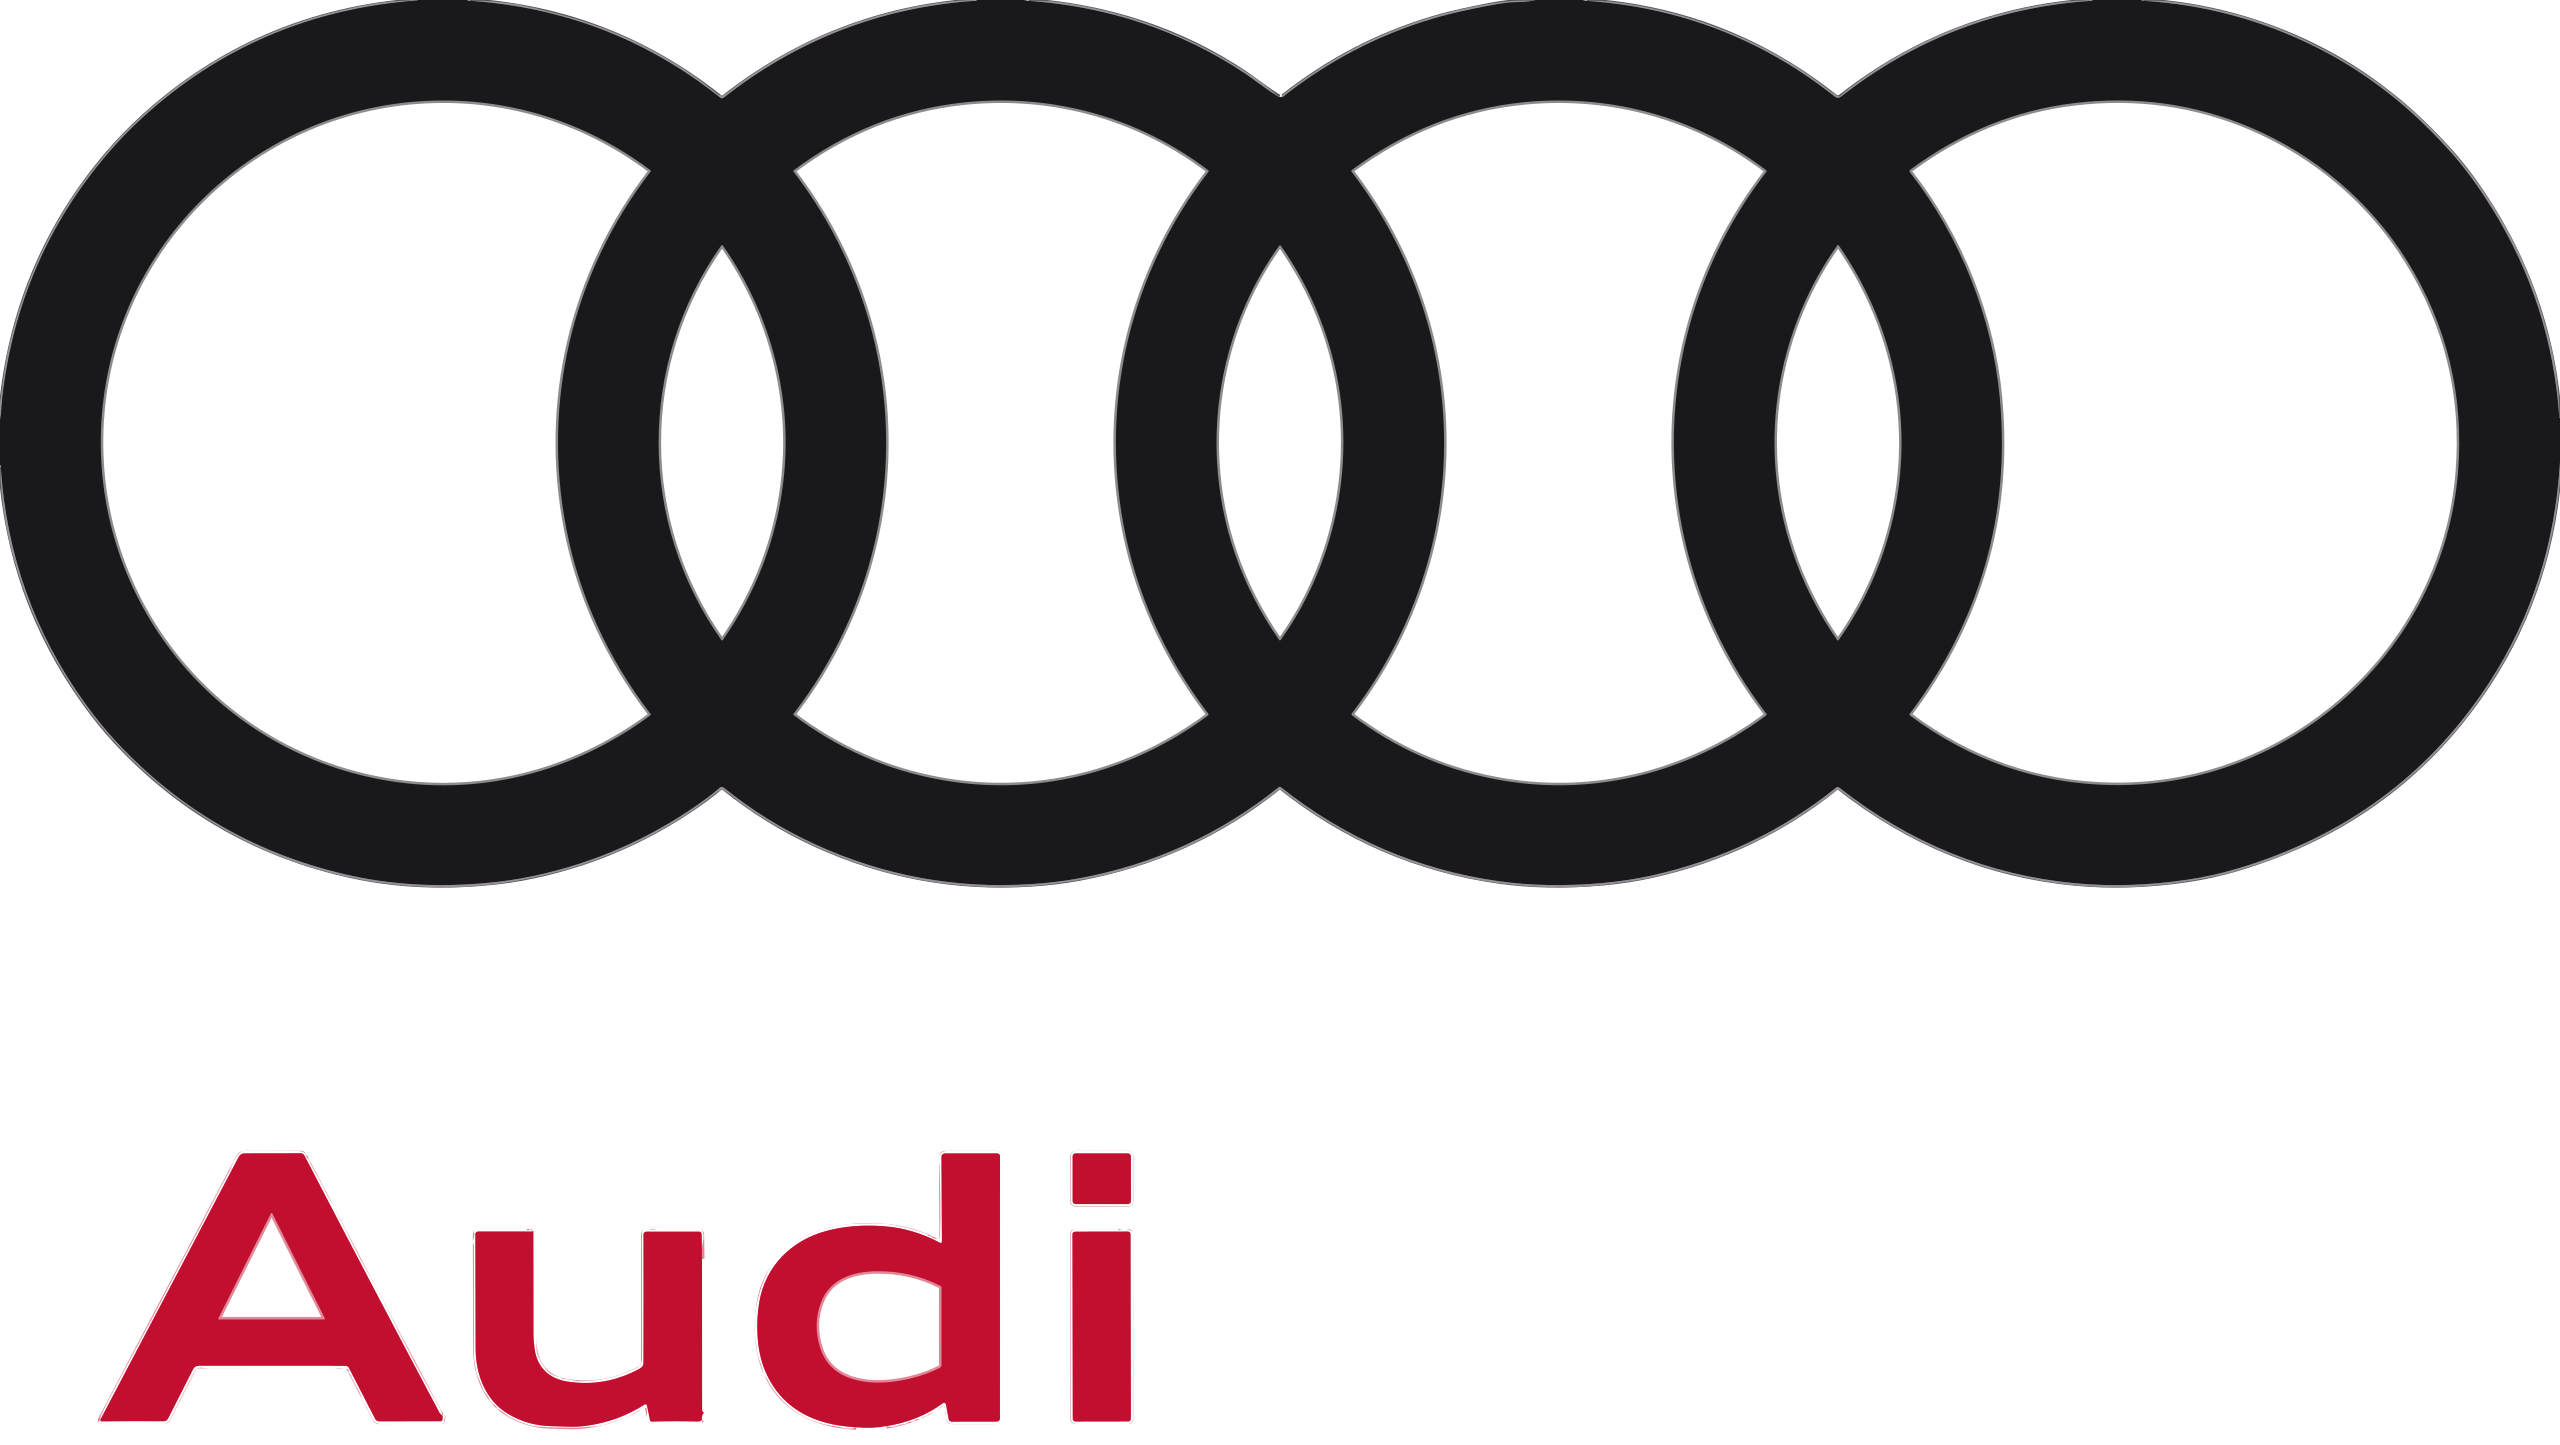 Audi Four Circles Macro Logo On White Car Background Stock Photo - Download  Image Now - iStock